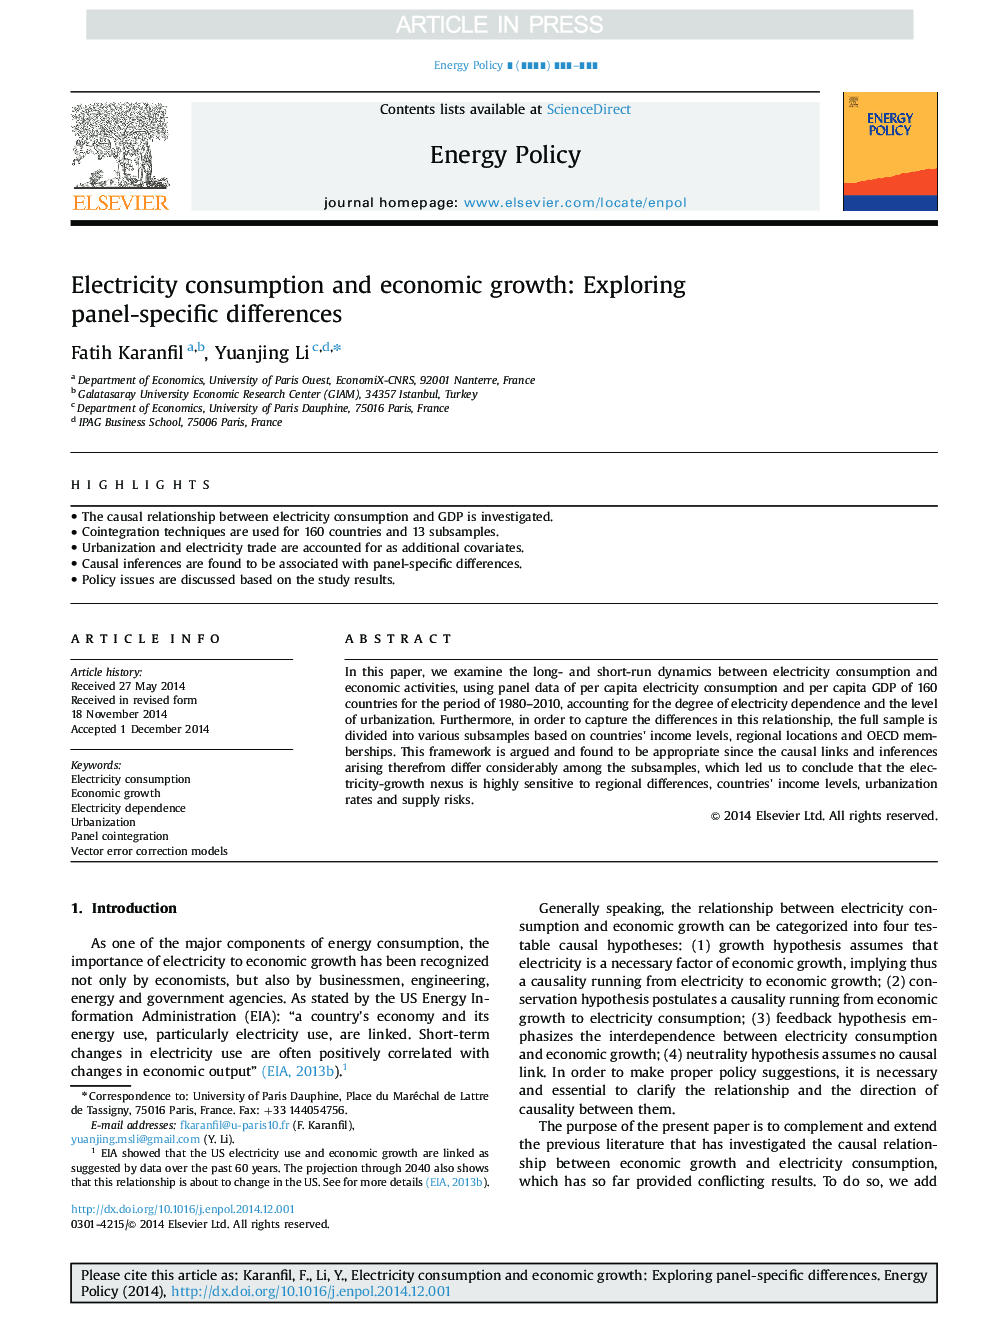 مصرف برق و رشد اقتصادی: بررسی تفاوت های پانل 